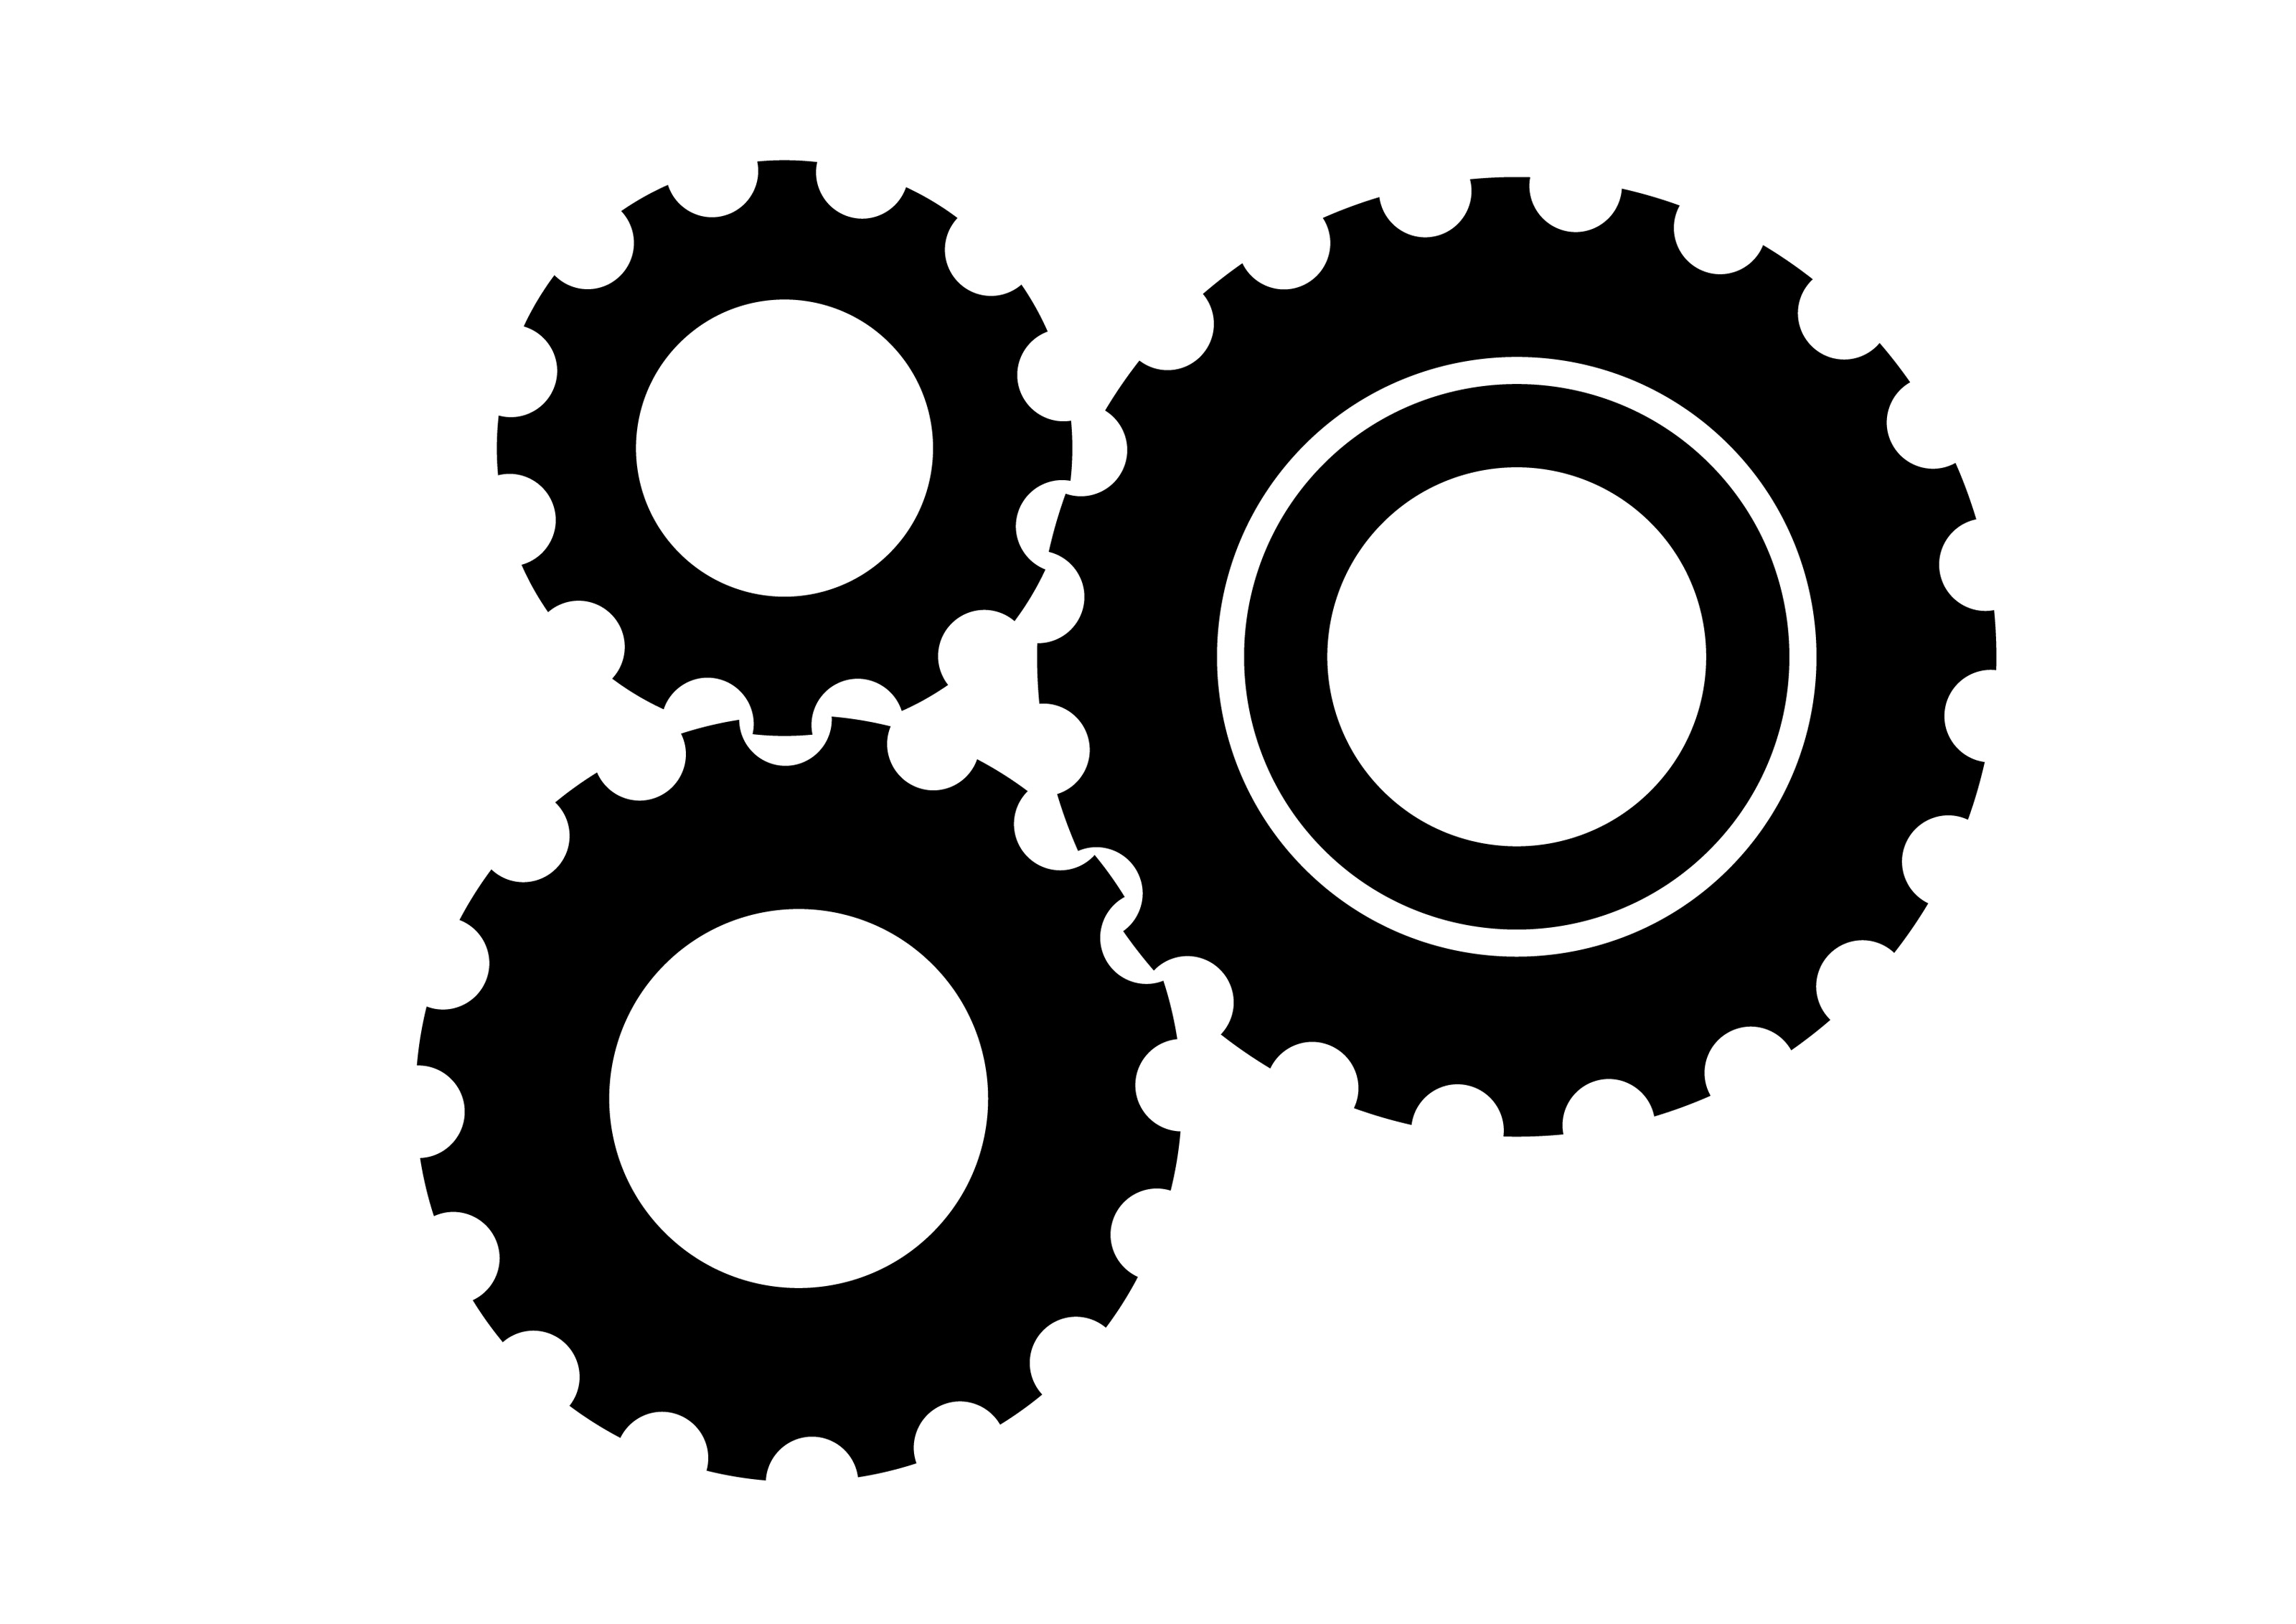 3-black-gear-wheels-free-vector-icon